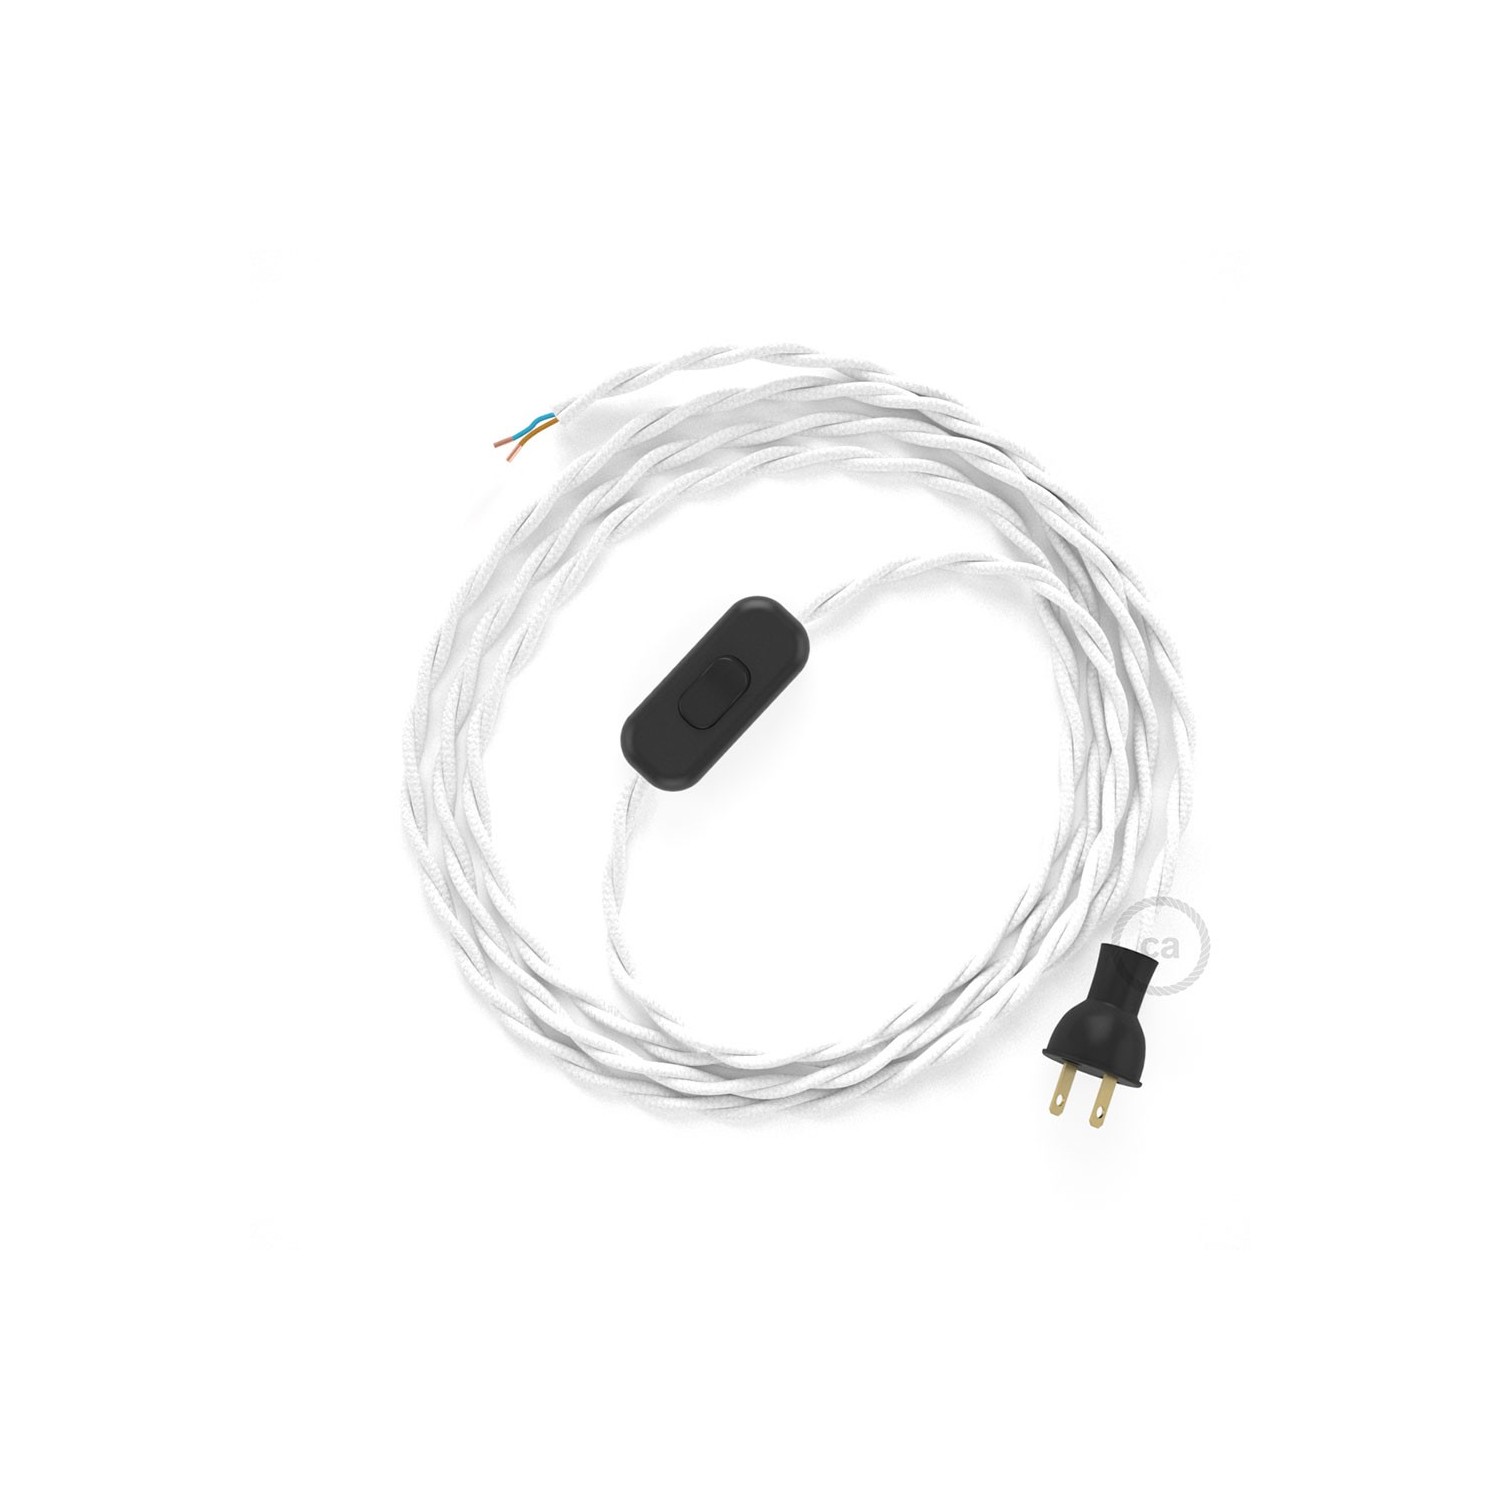 Cableado para lámpara de mesa, cable TM01 Rayón Blanco 1,8 m. Elige el color de la clavija y del interruptor!